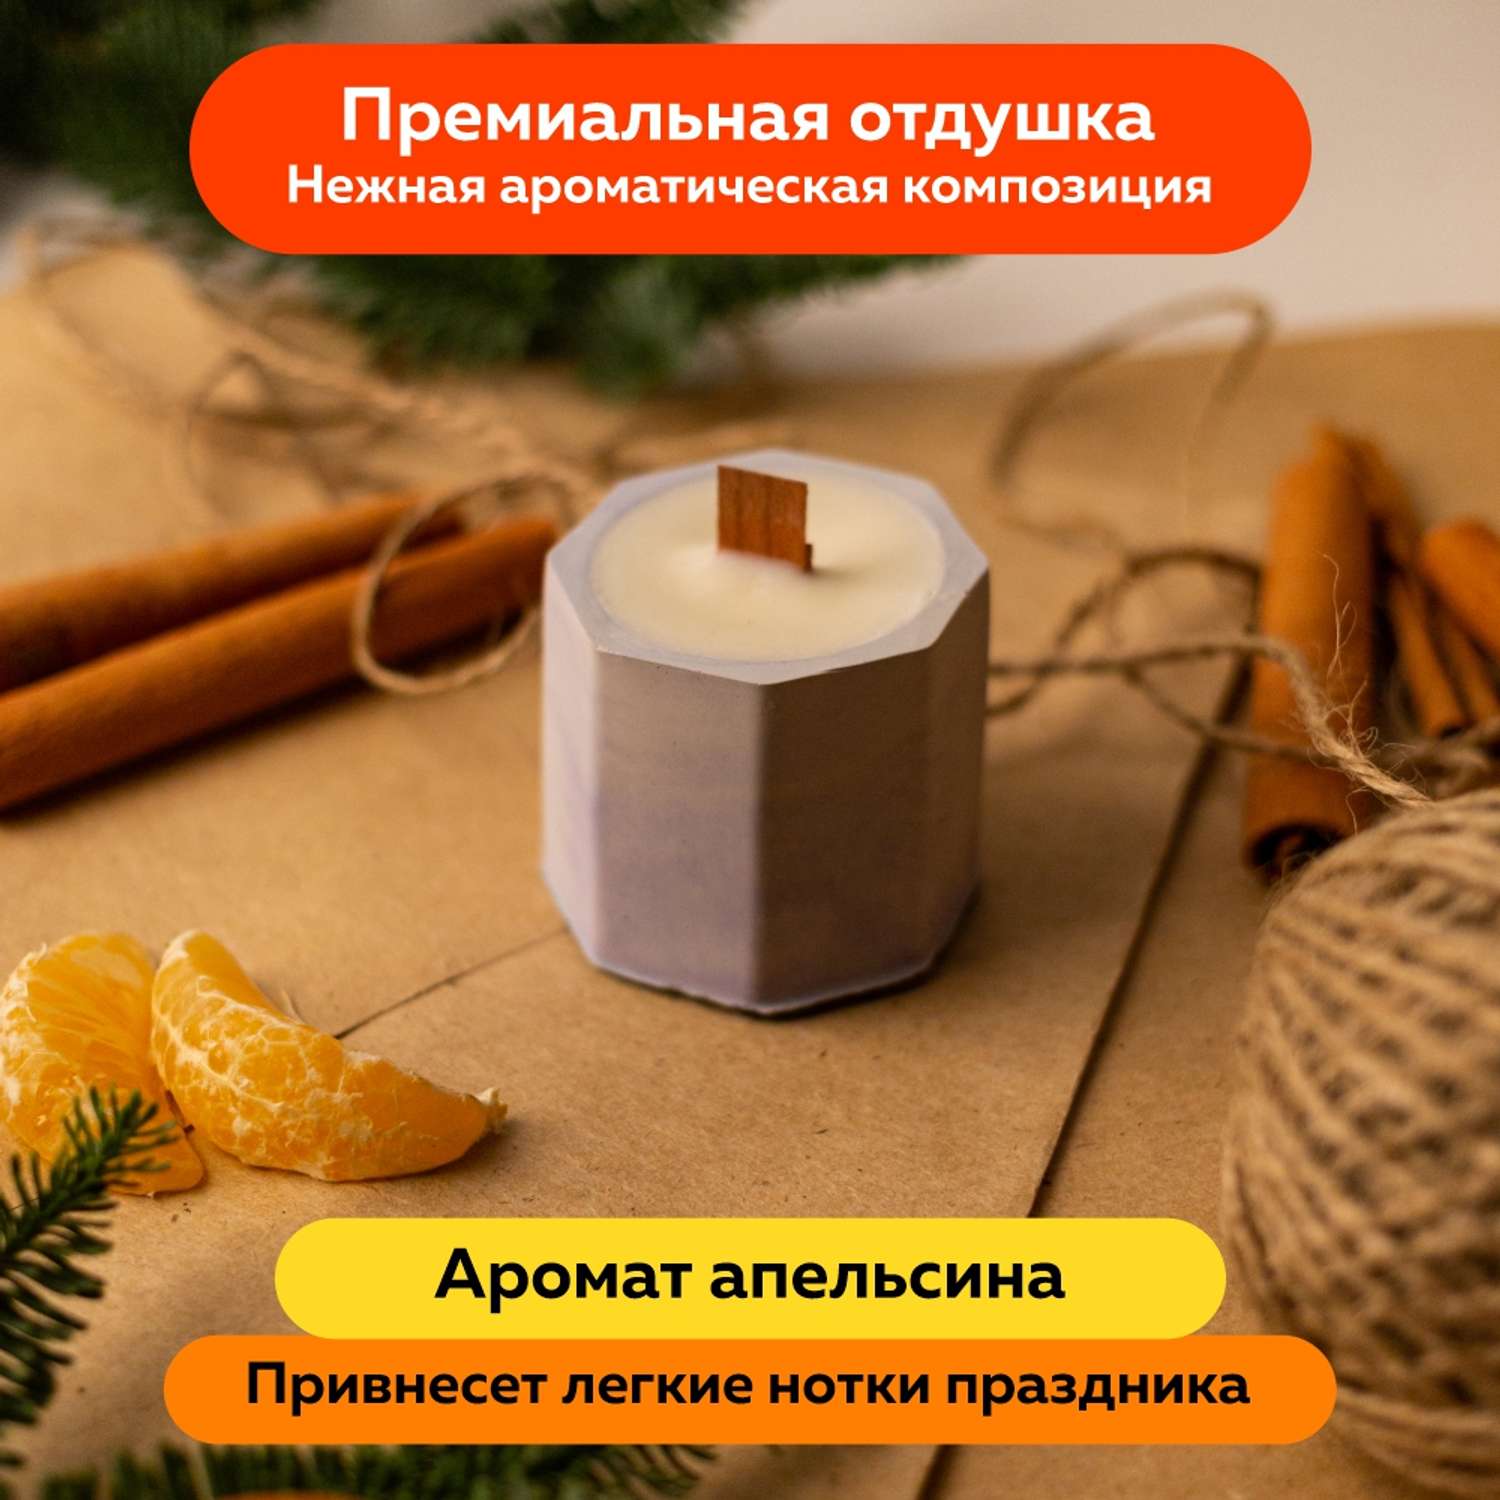 Набор для творчества Ebru Profi 01015 по созданию контейнерной свечи. Огненный феникс - фото 13